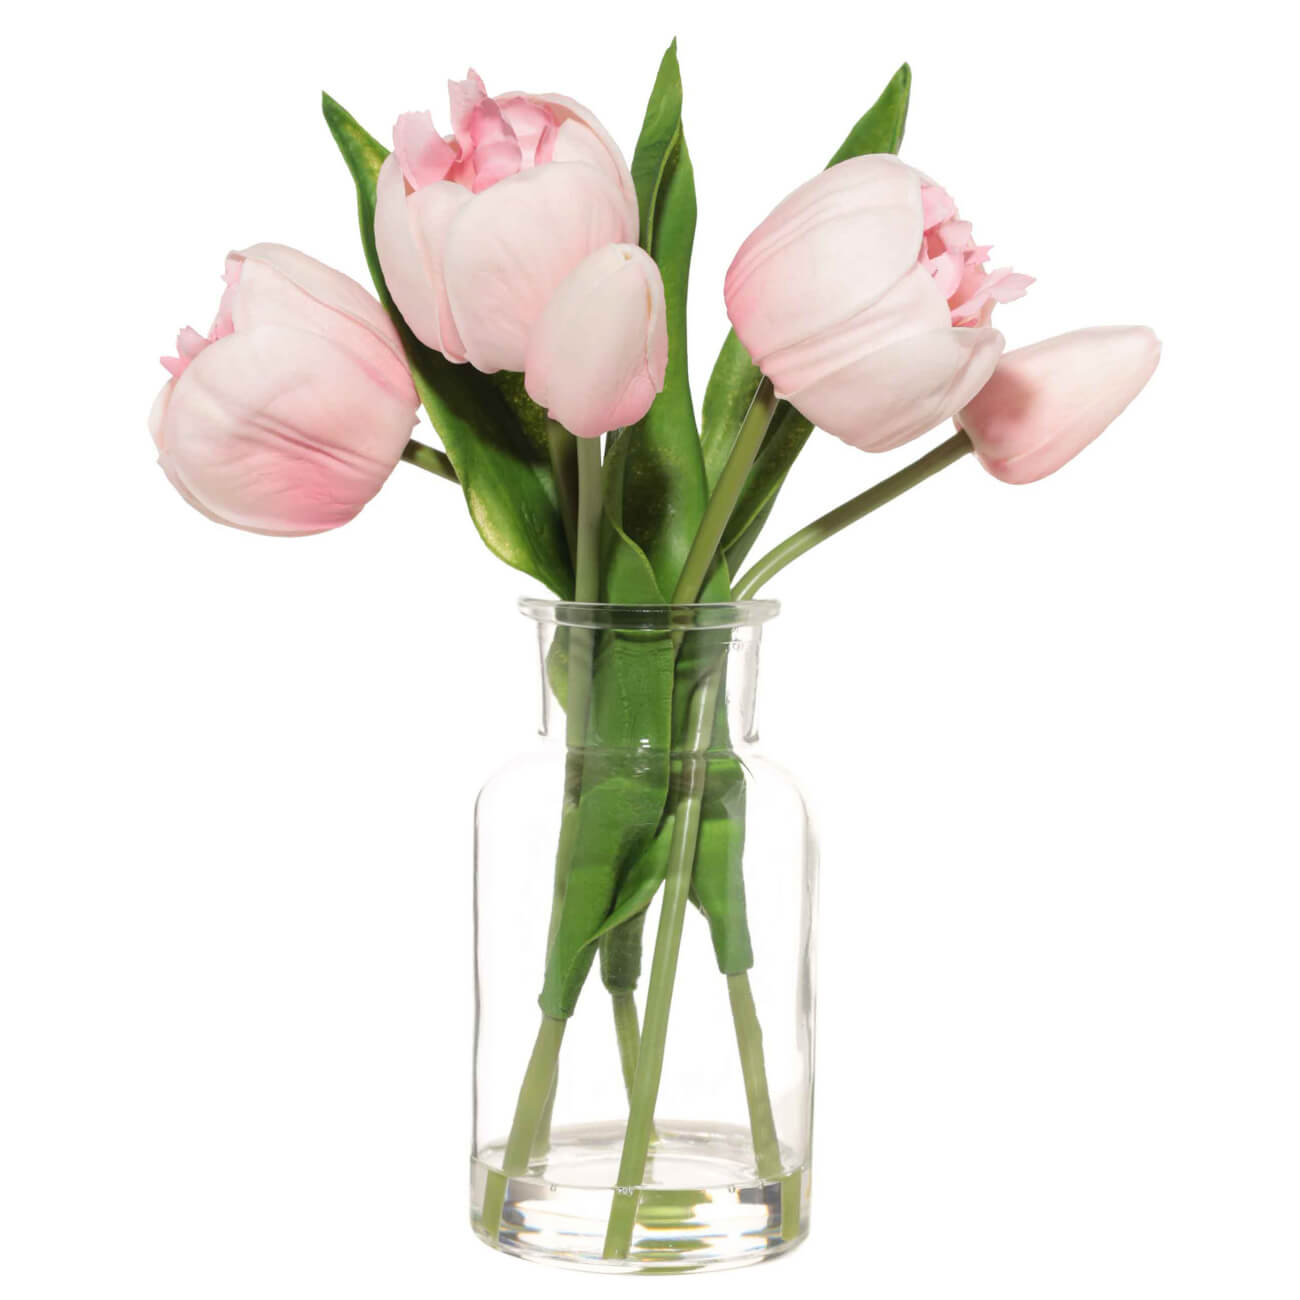 Букет искусственный, 21 см, в вазе, полиуретан/стекло, Розовые тюльпаны, Tulip garden букет солнечный лимон